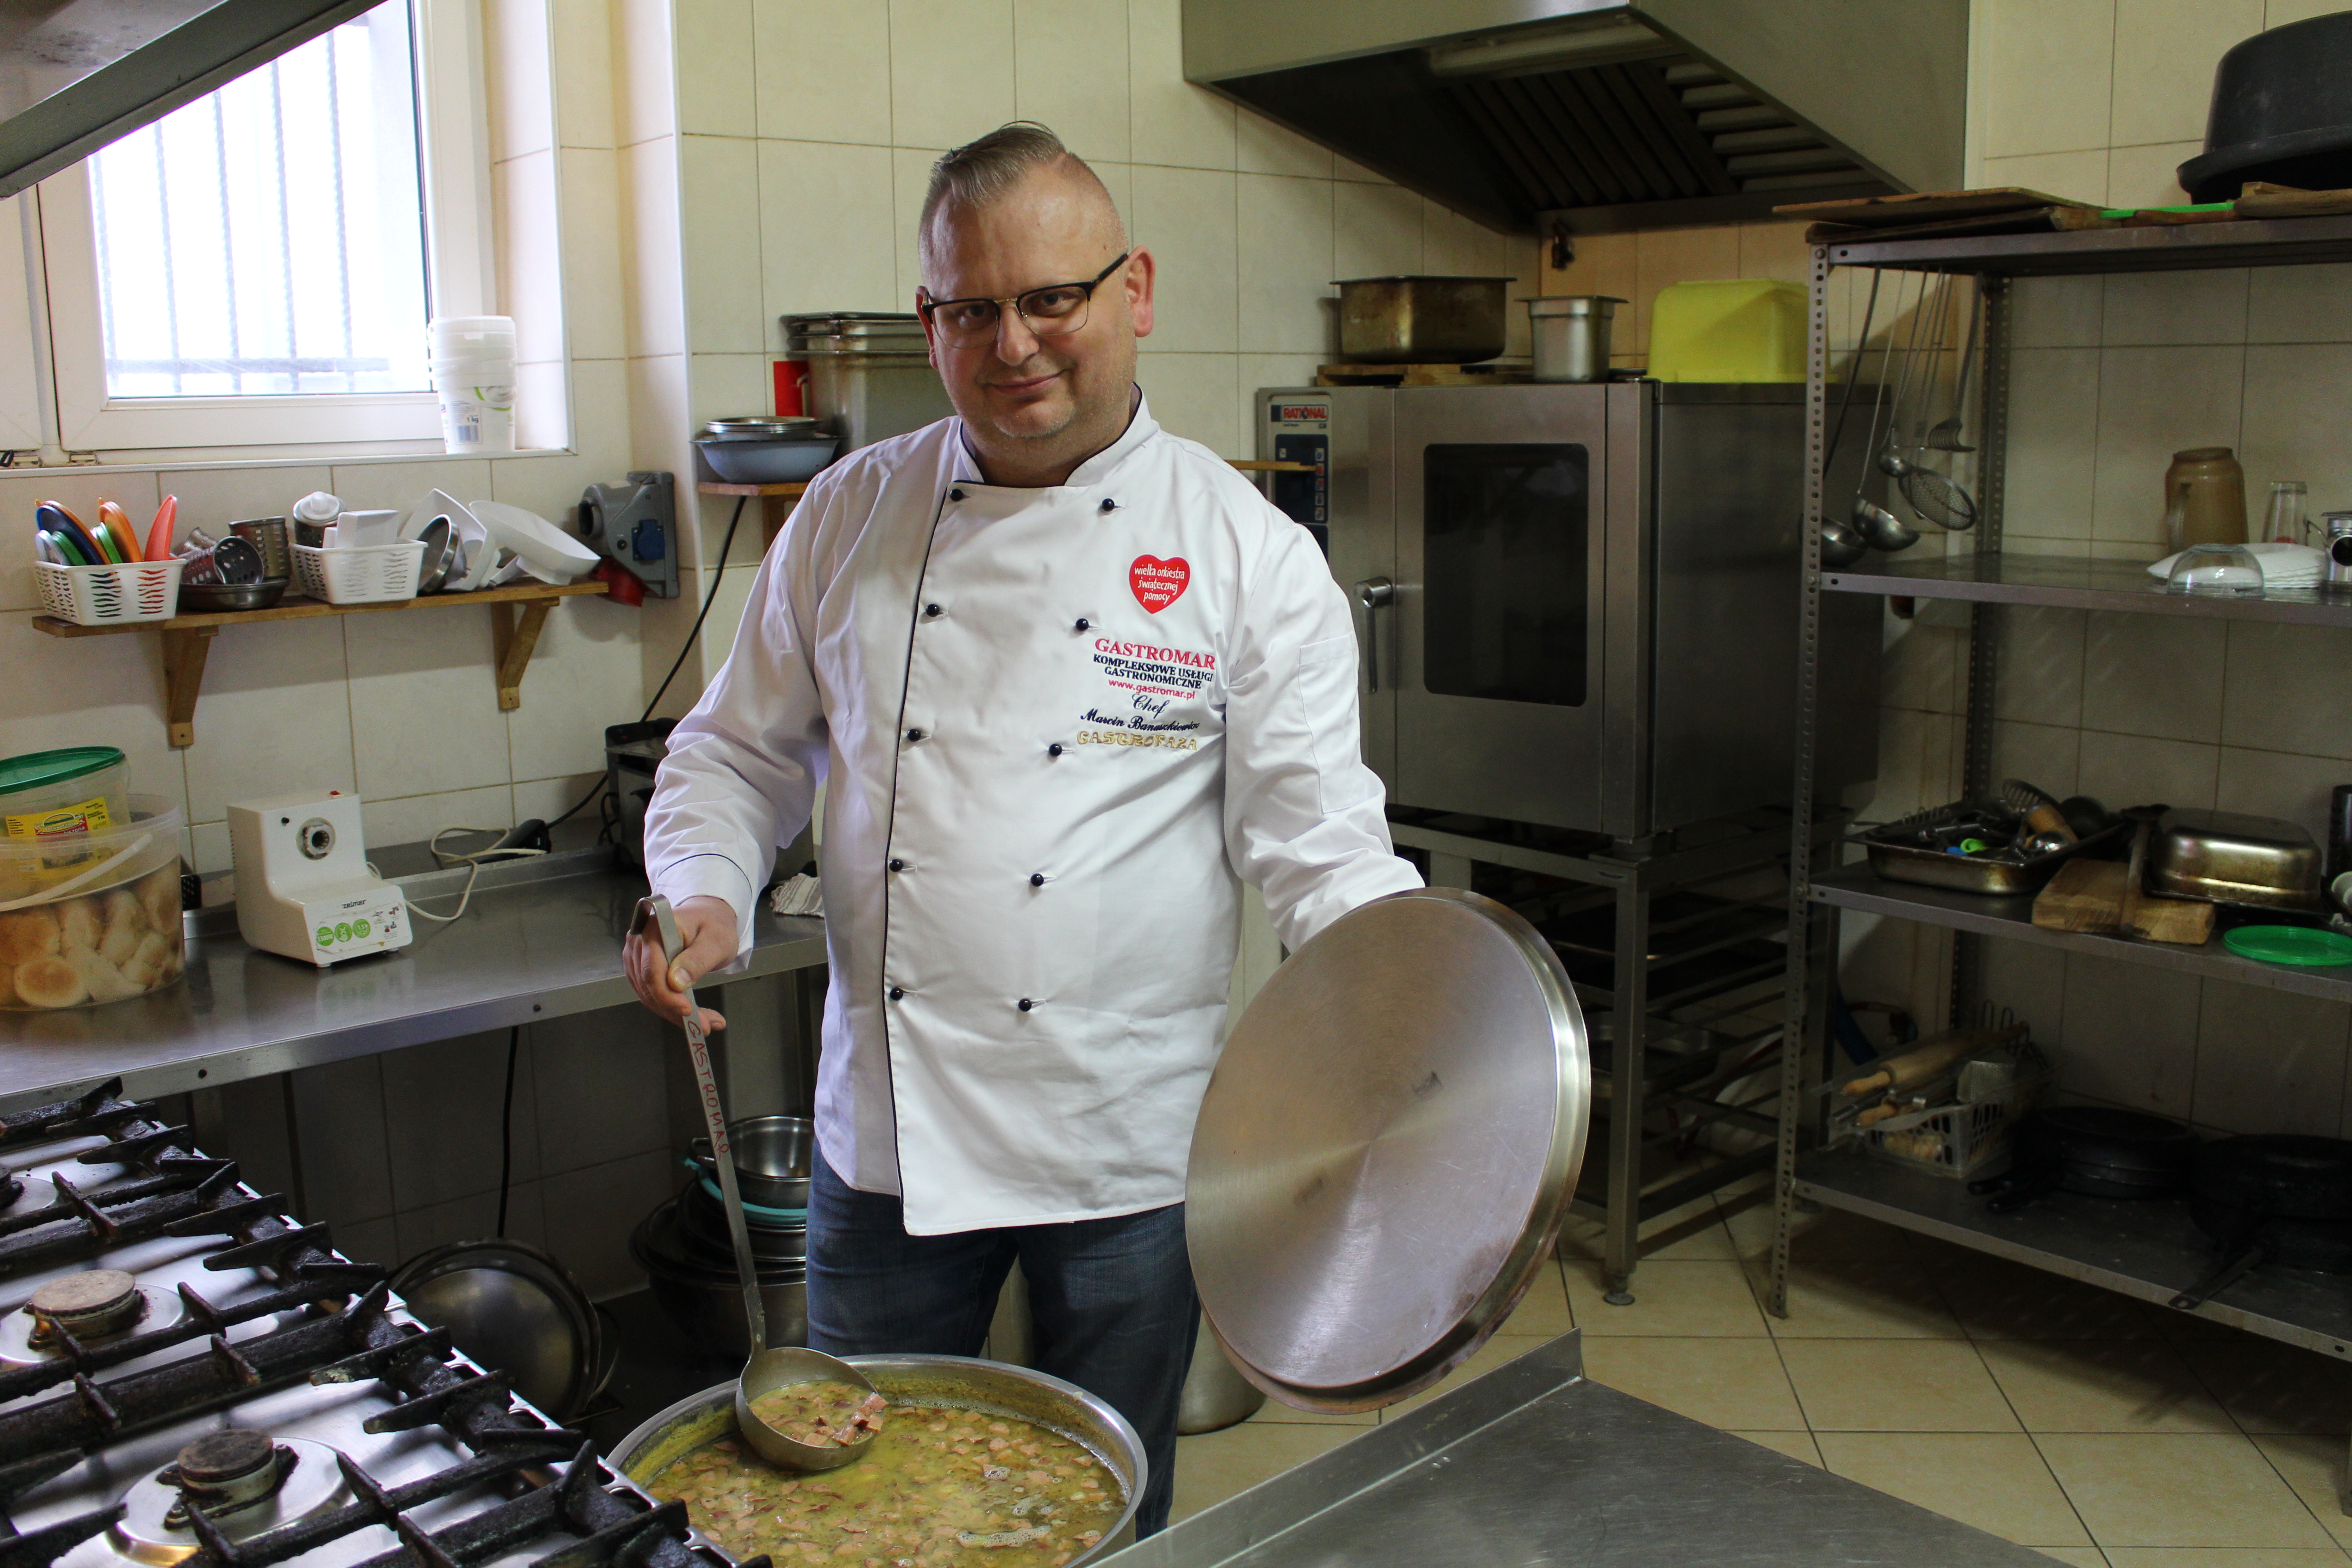 Akcja. 60 litrów grochówki od Marcina, czyli 150 porcji dla wolontariuszy WOŚP